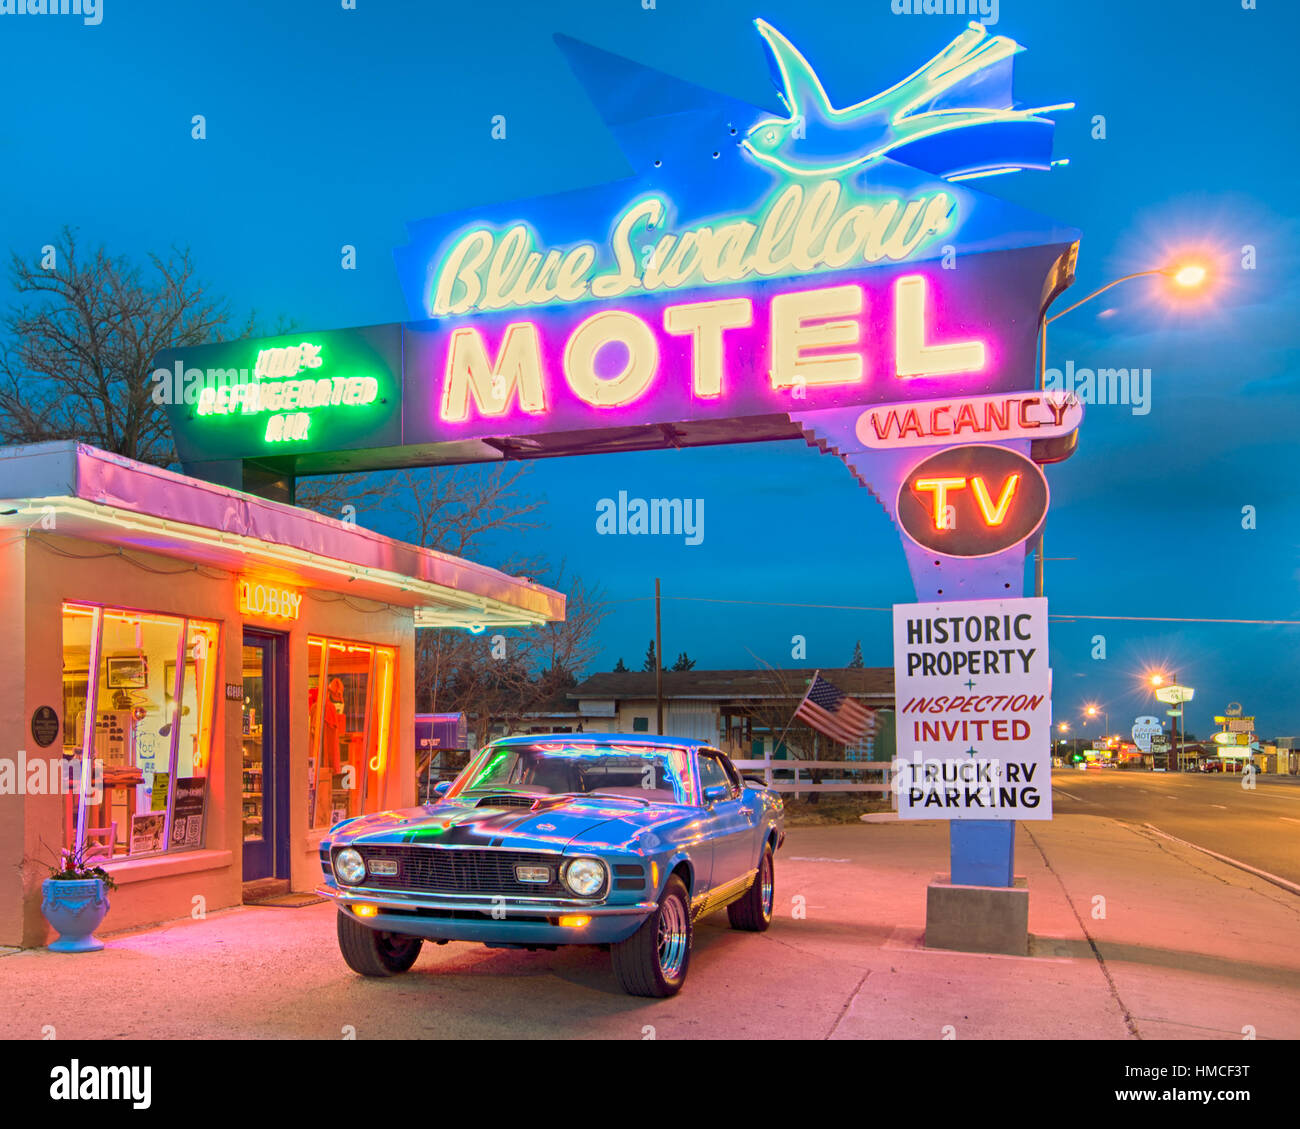 Dämmerung im historischen blauen schlucken Motel an der Route 66. 1970 Ford Mustang Oldtimer ist unter den ikonischen Leuchtreklame geparkt. Stockfoto